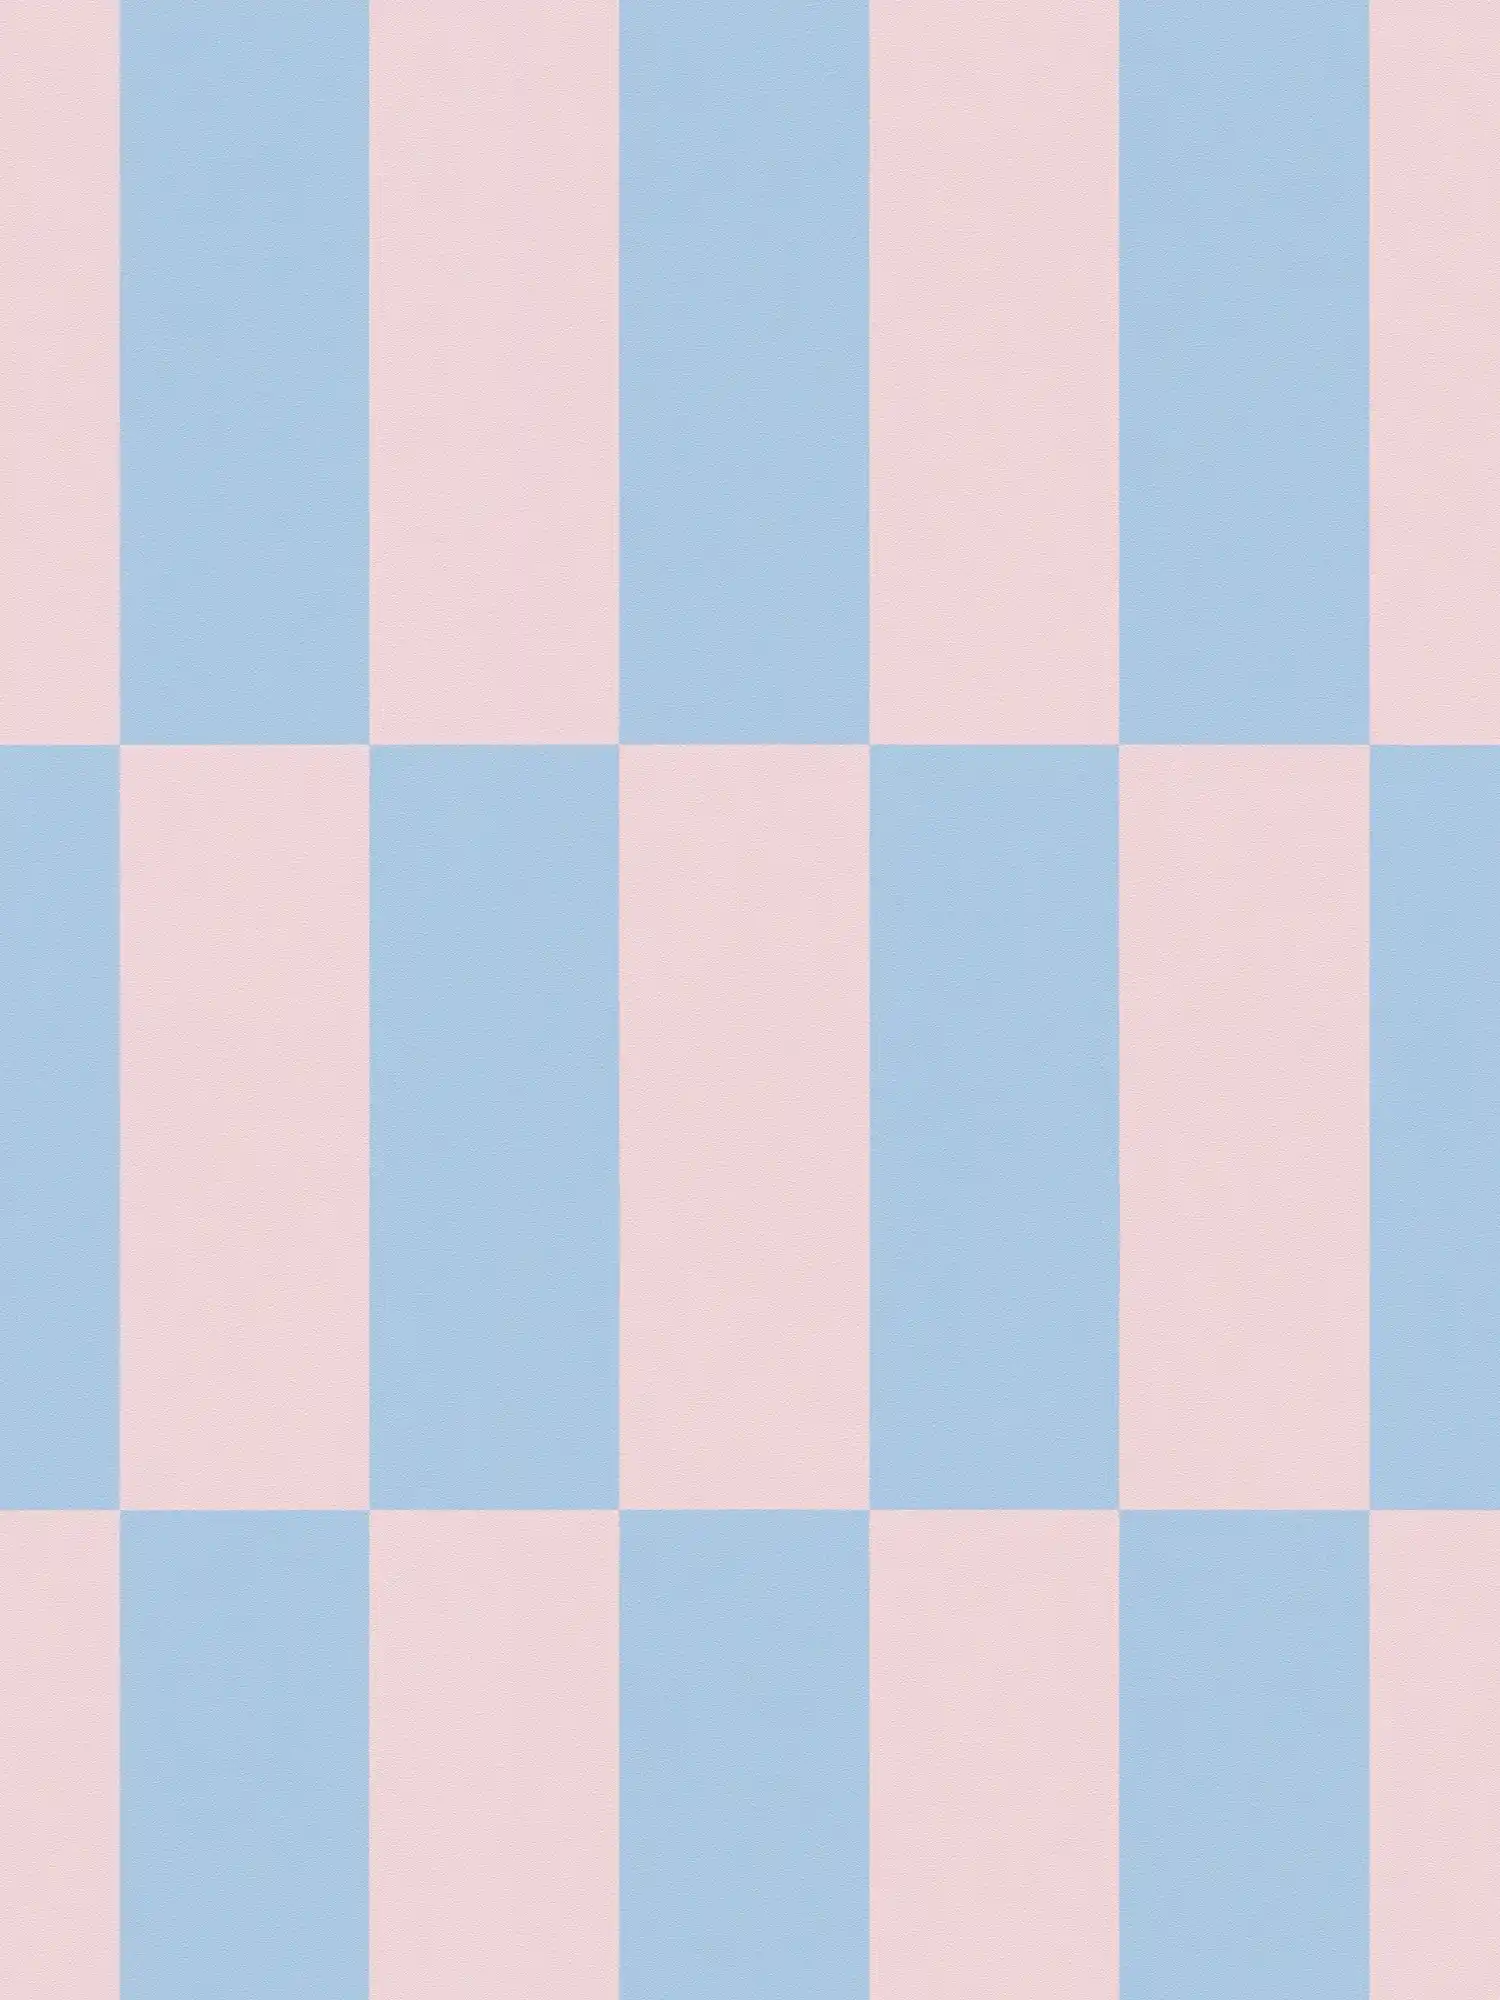         Vliesbehang grafische vierkanten tweekleurig - blauw, roze
    